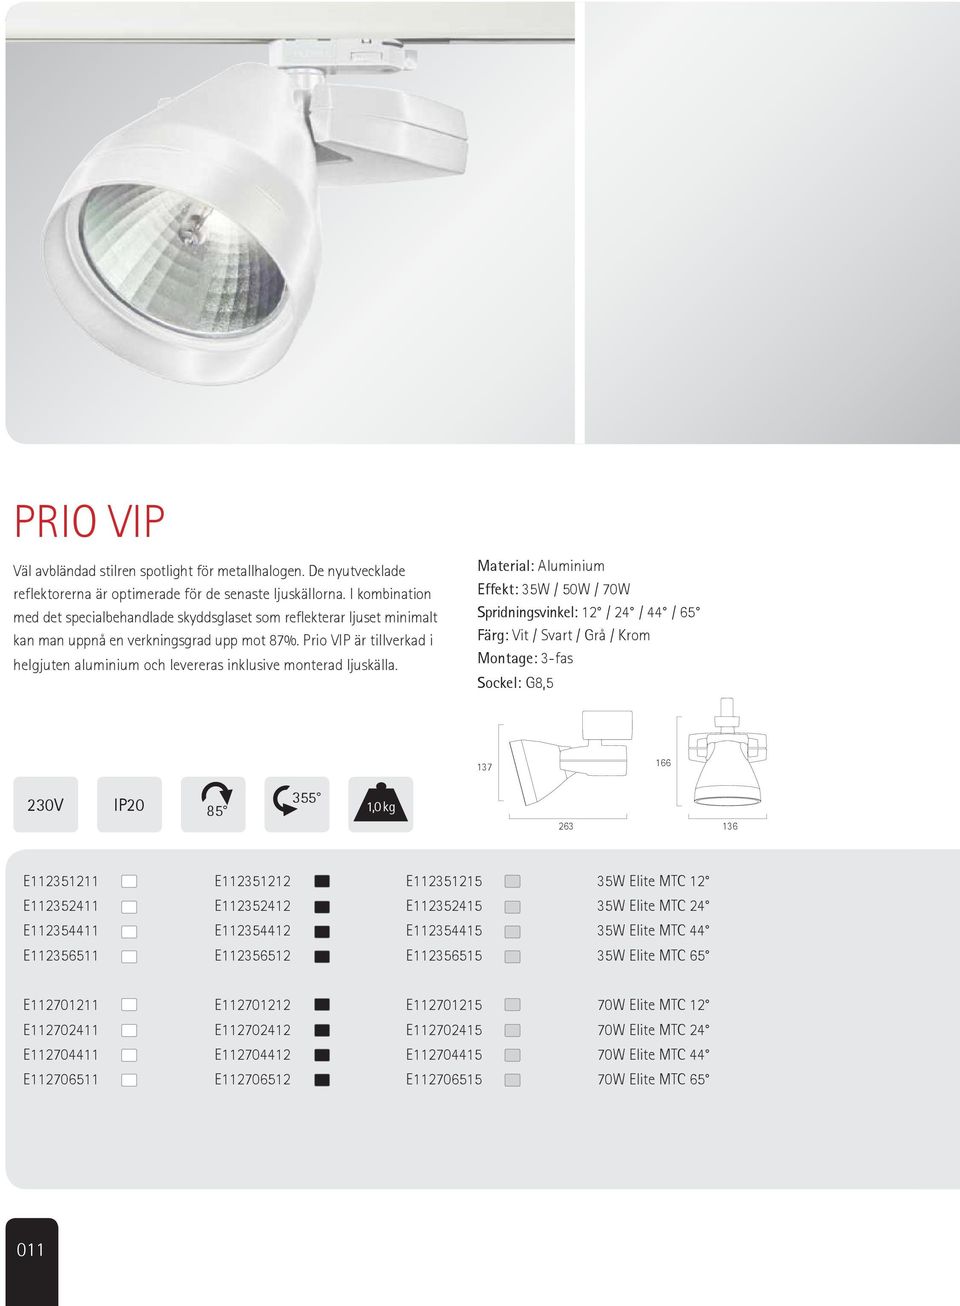 Prio VIP är tillverkad i helgjuten aluminium och levereras inklusive monterad ljuskälla.